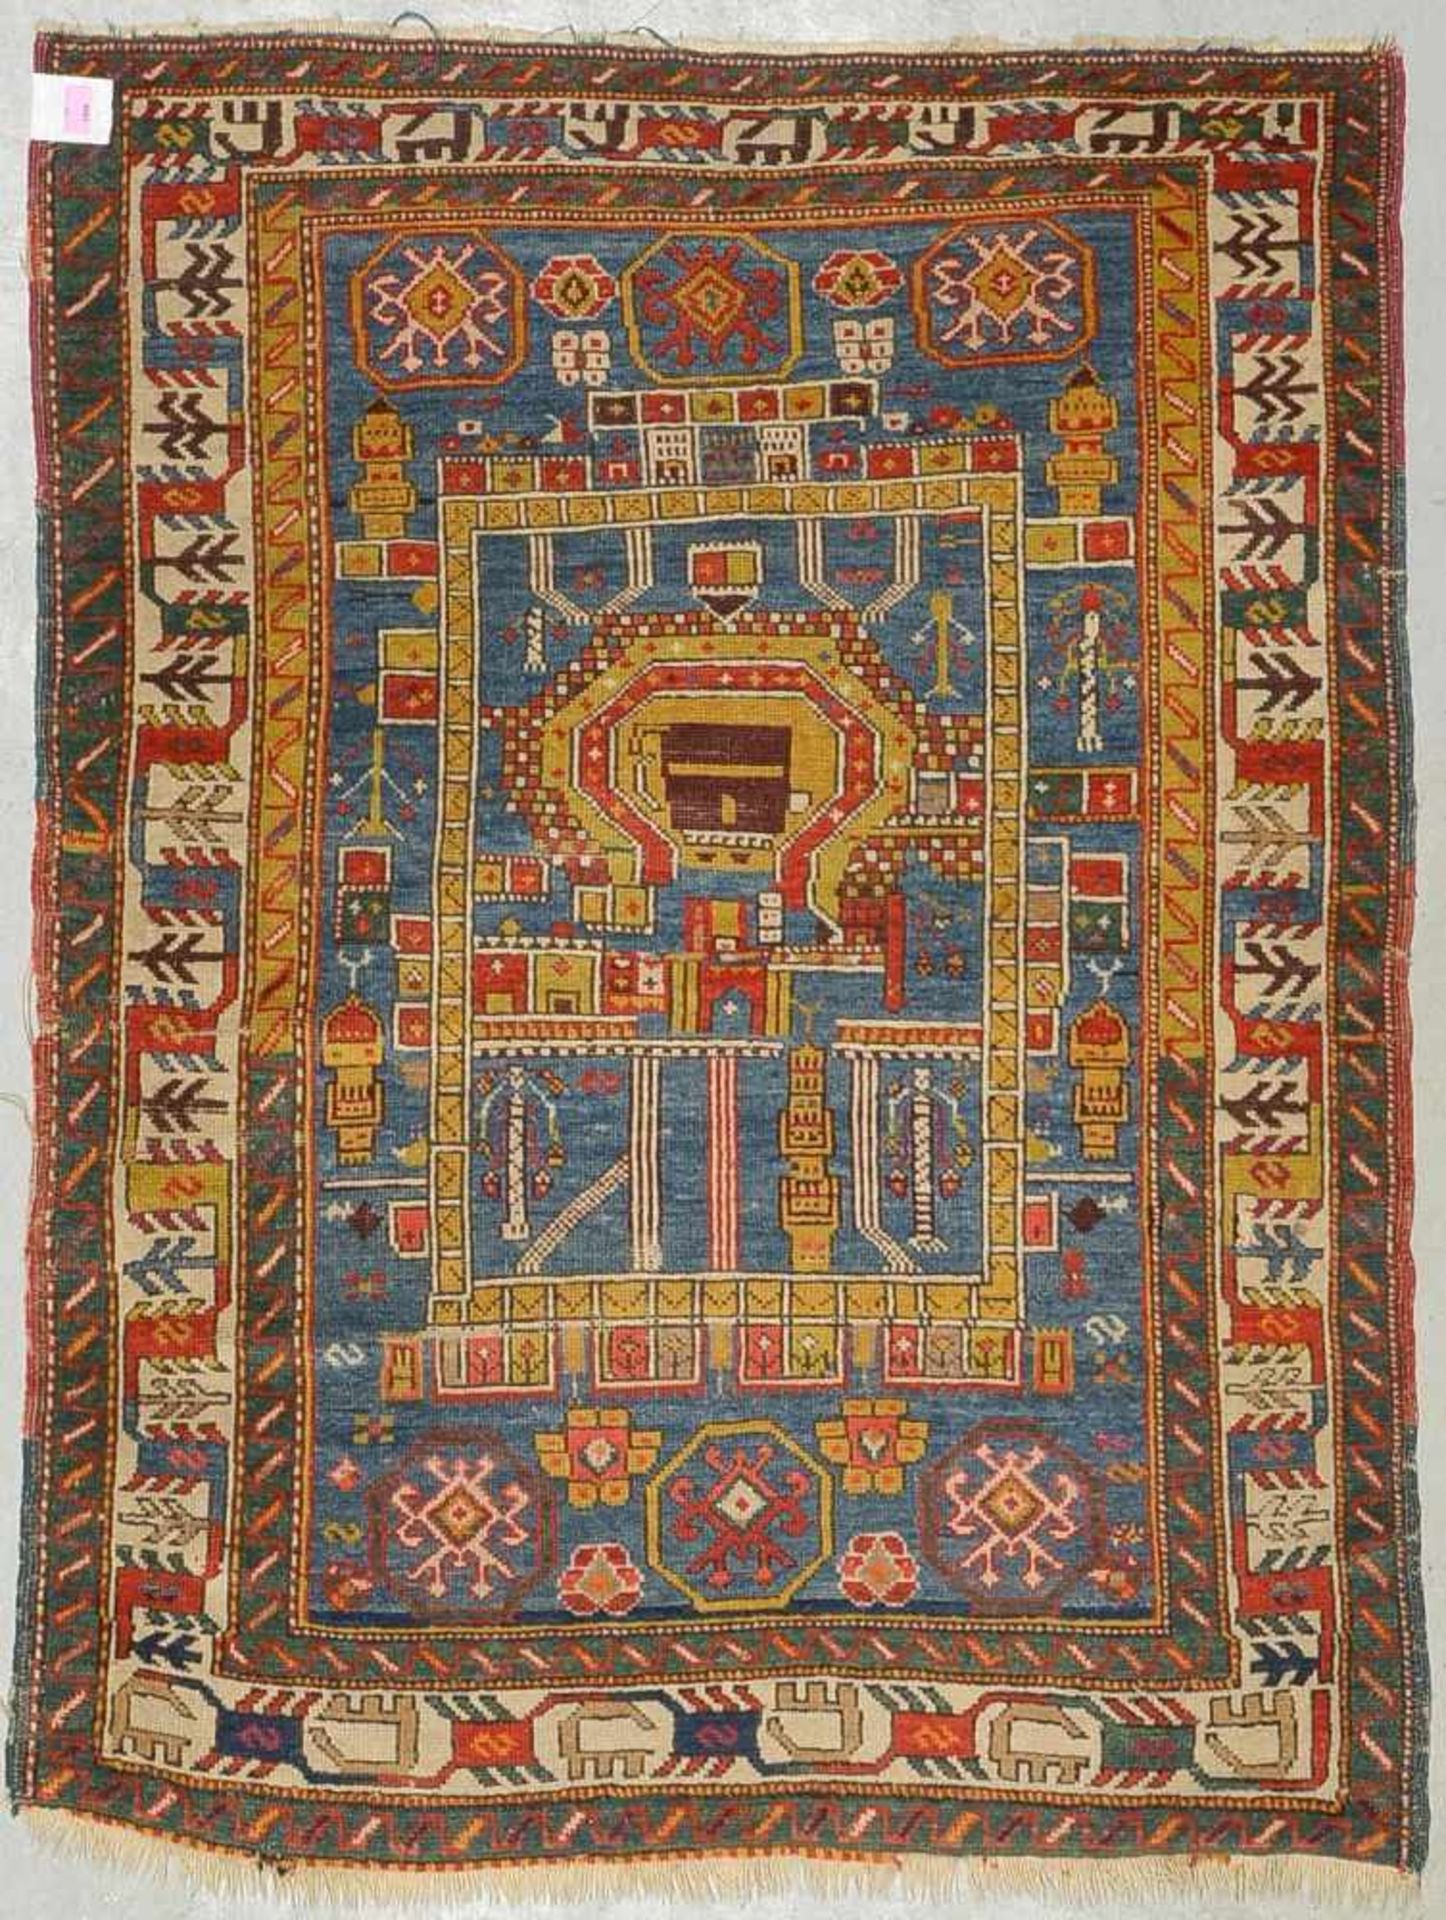 Shirwan (Sammlerstück), antik, seltenes Motiv, in gutem altersgemäßem Zustand, Maße 140 x 106 cm